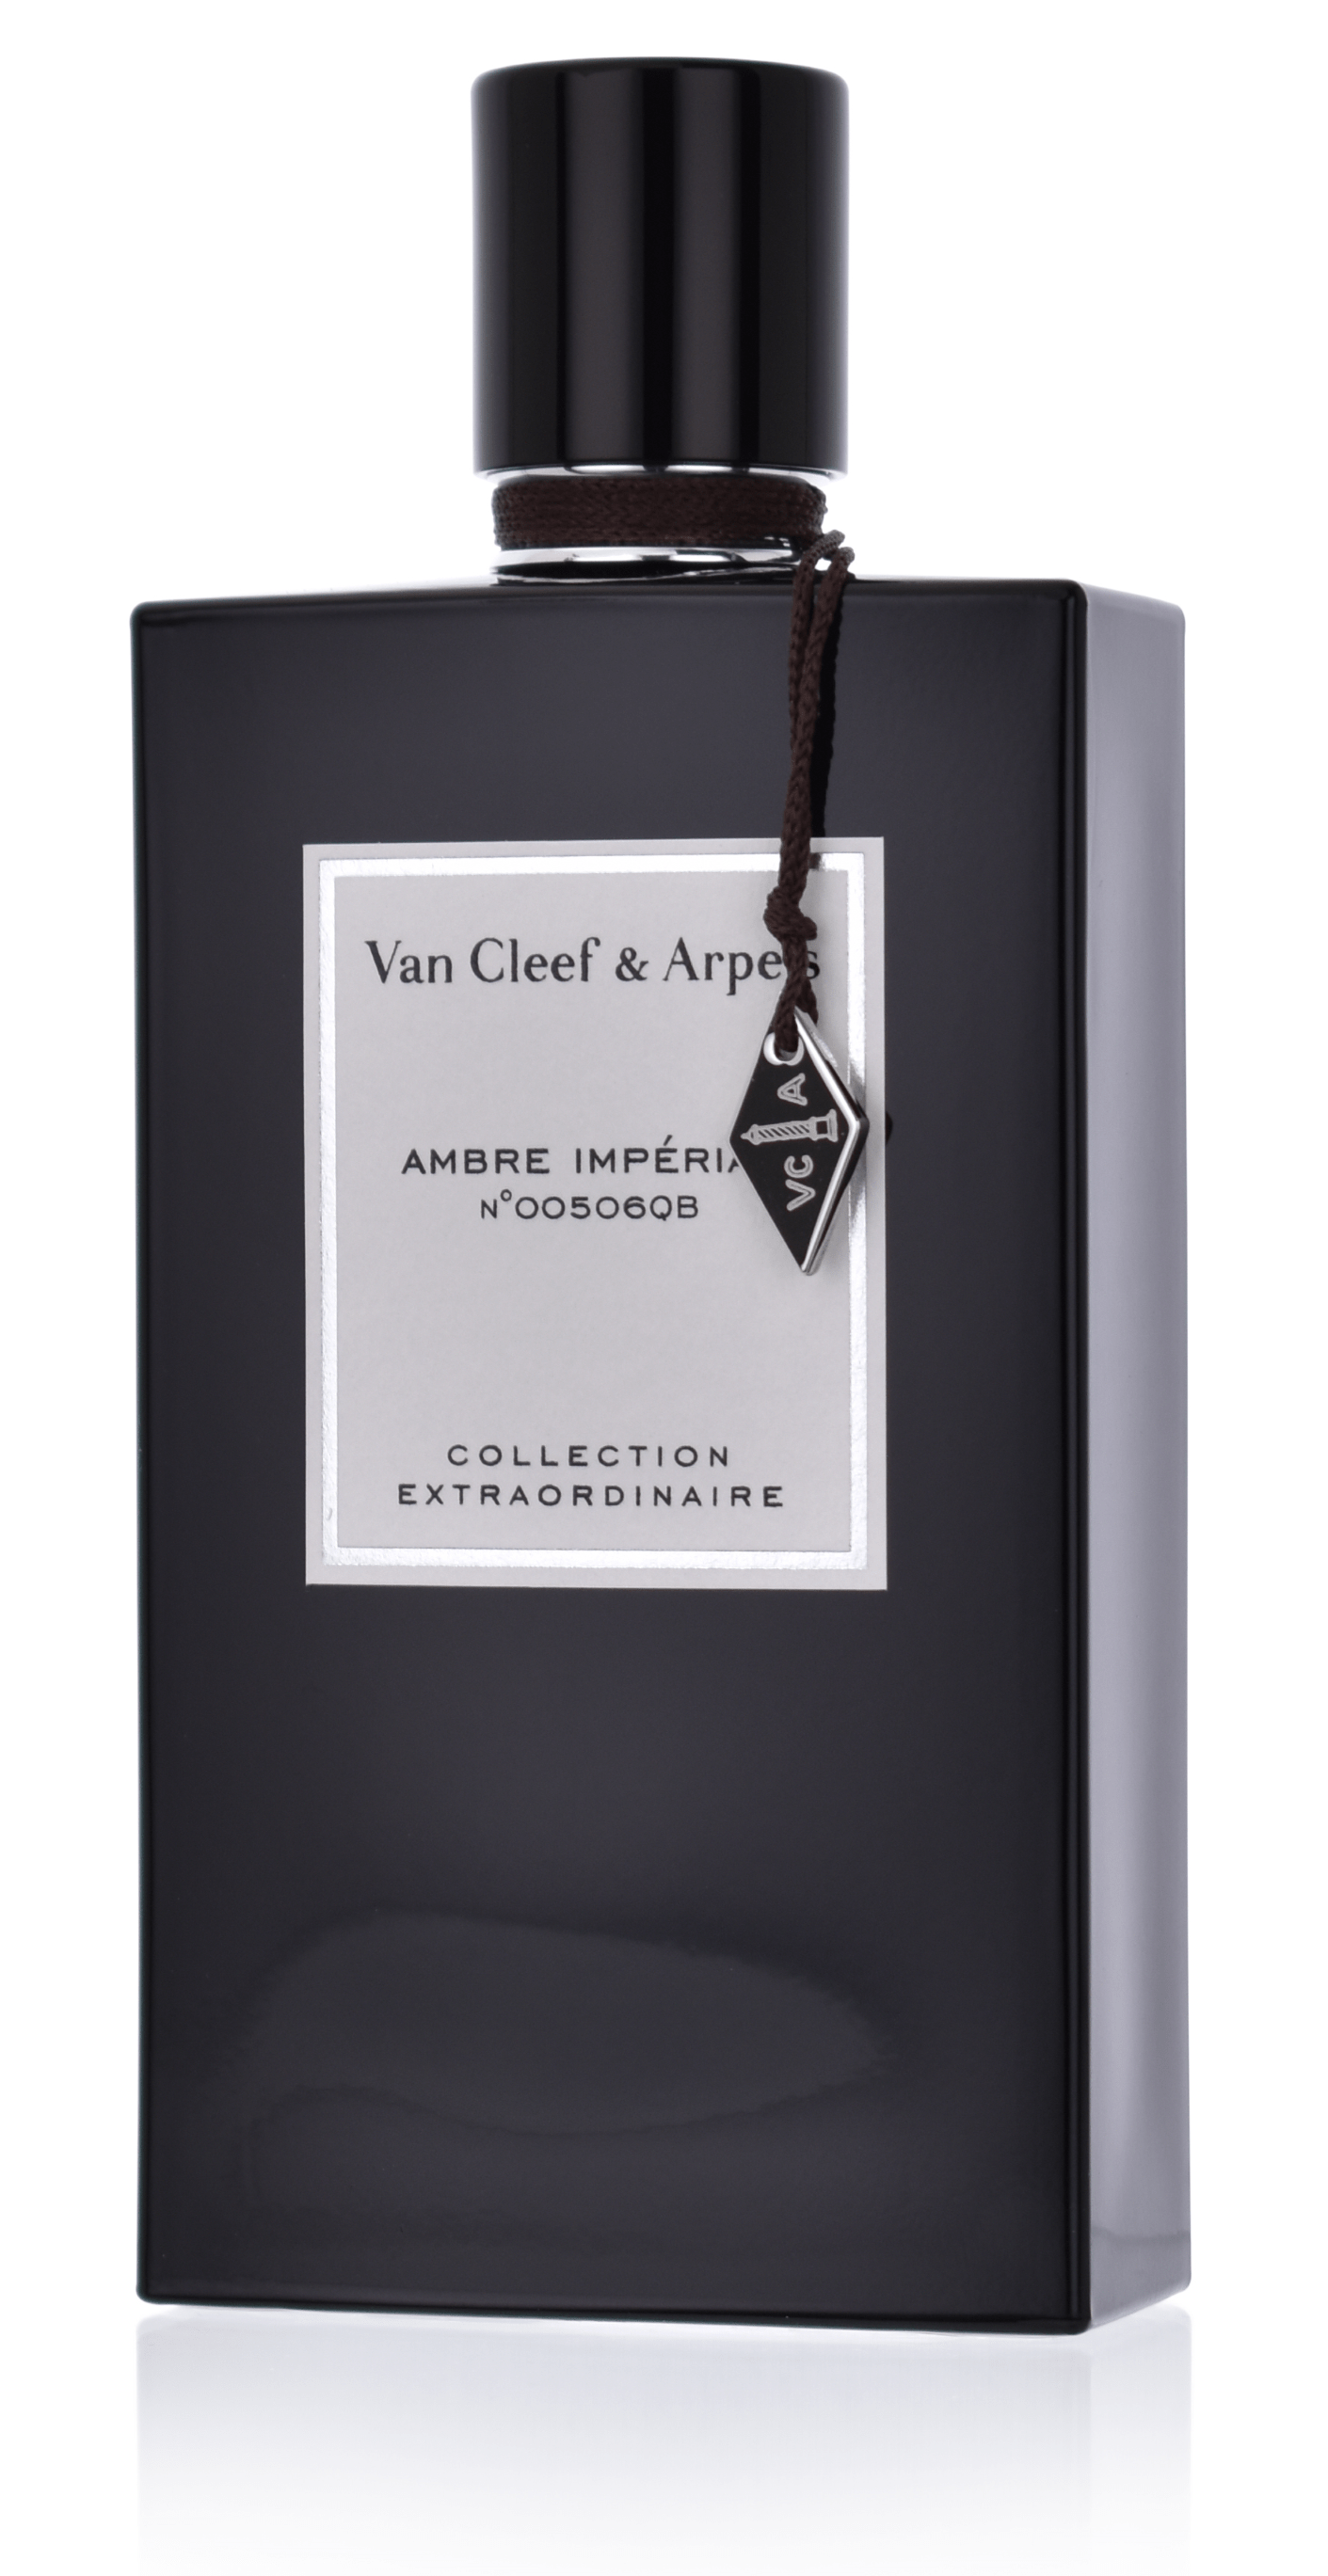 Van Cleef & Arpels Collection Extraordinaire Ambre Imperial Eau de Parfum 5 ml Abfüllung